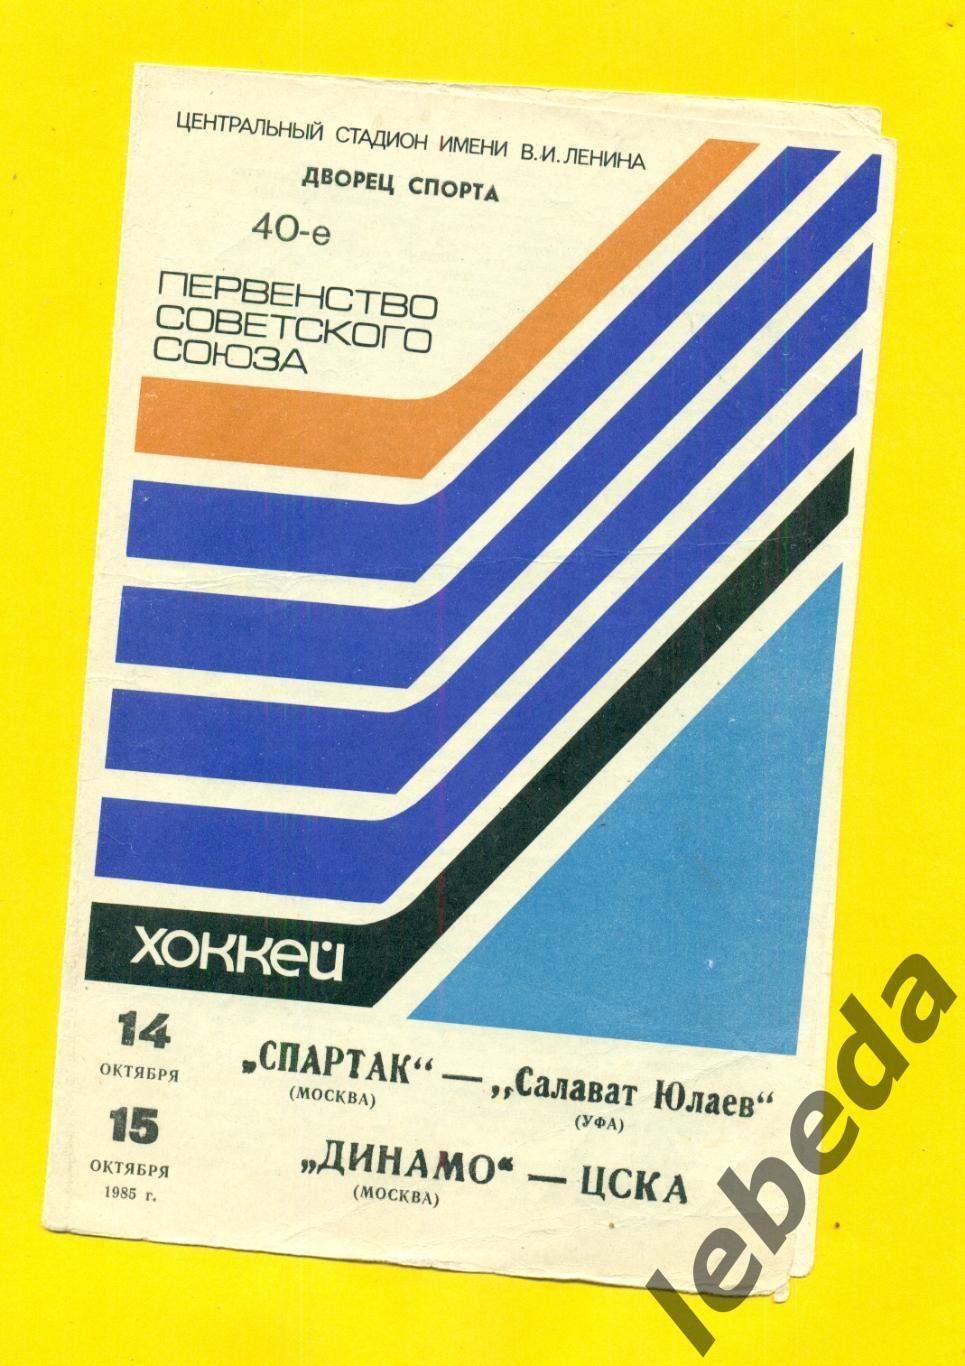 Спартак Москва - Салават Юлаев Уфа и Динамо Москв - ЦСКА -1985 г.(14-15.10.85.)